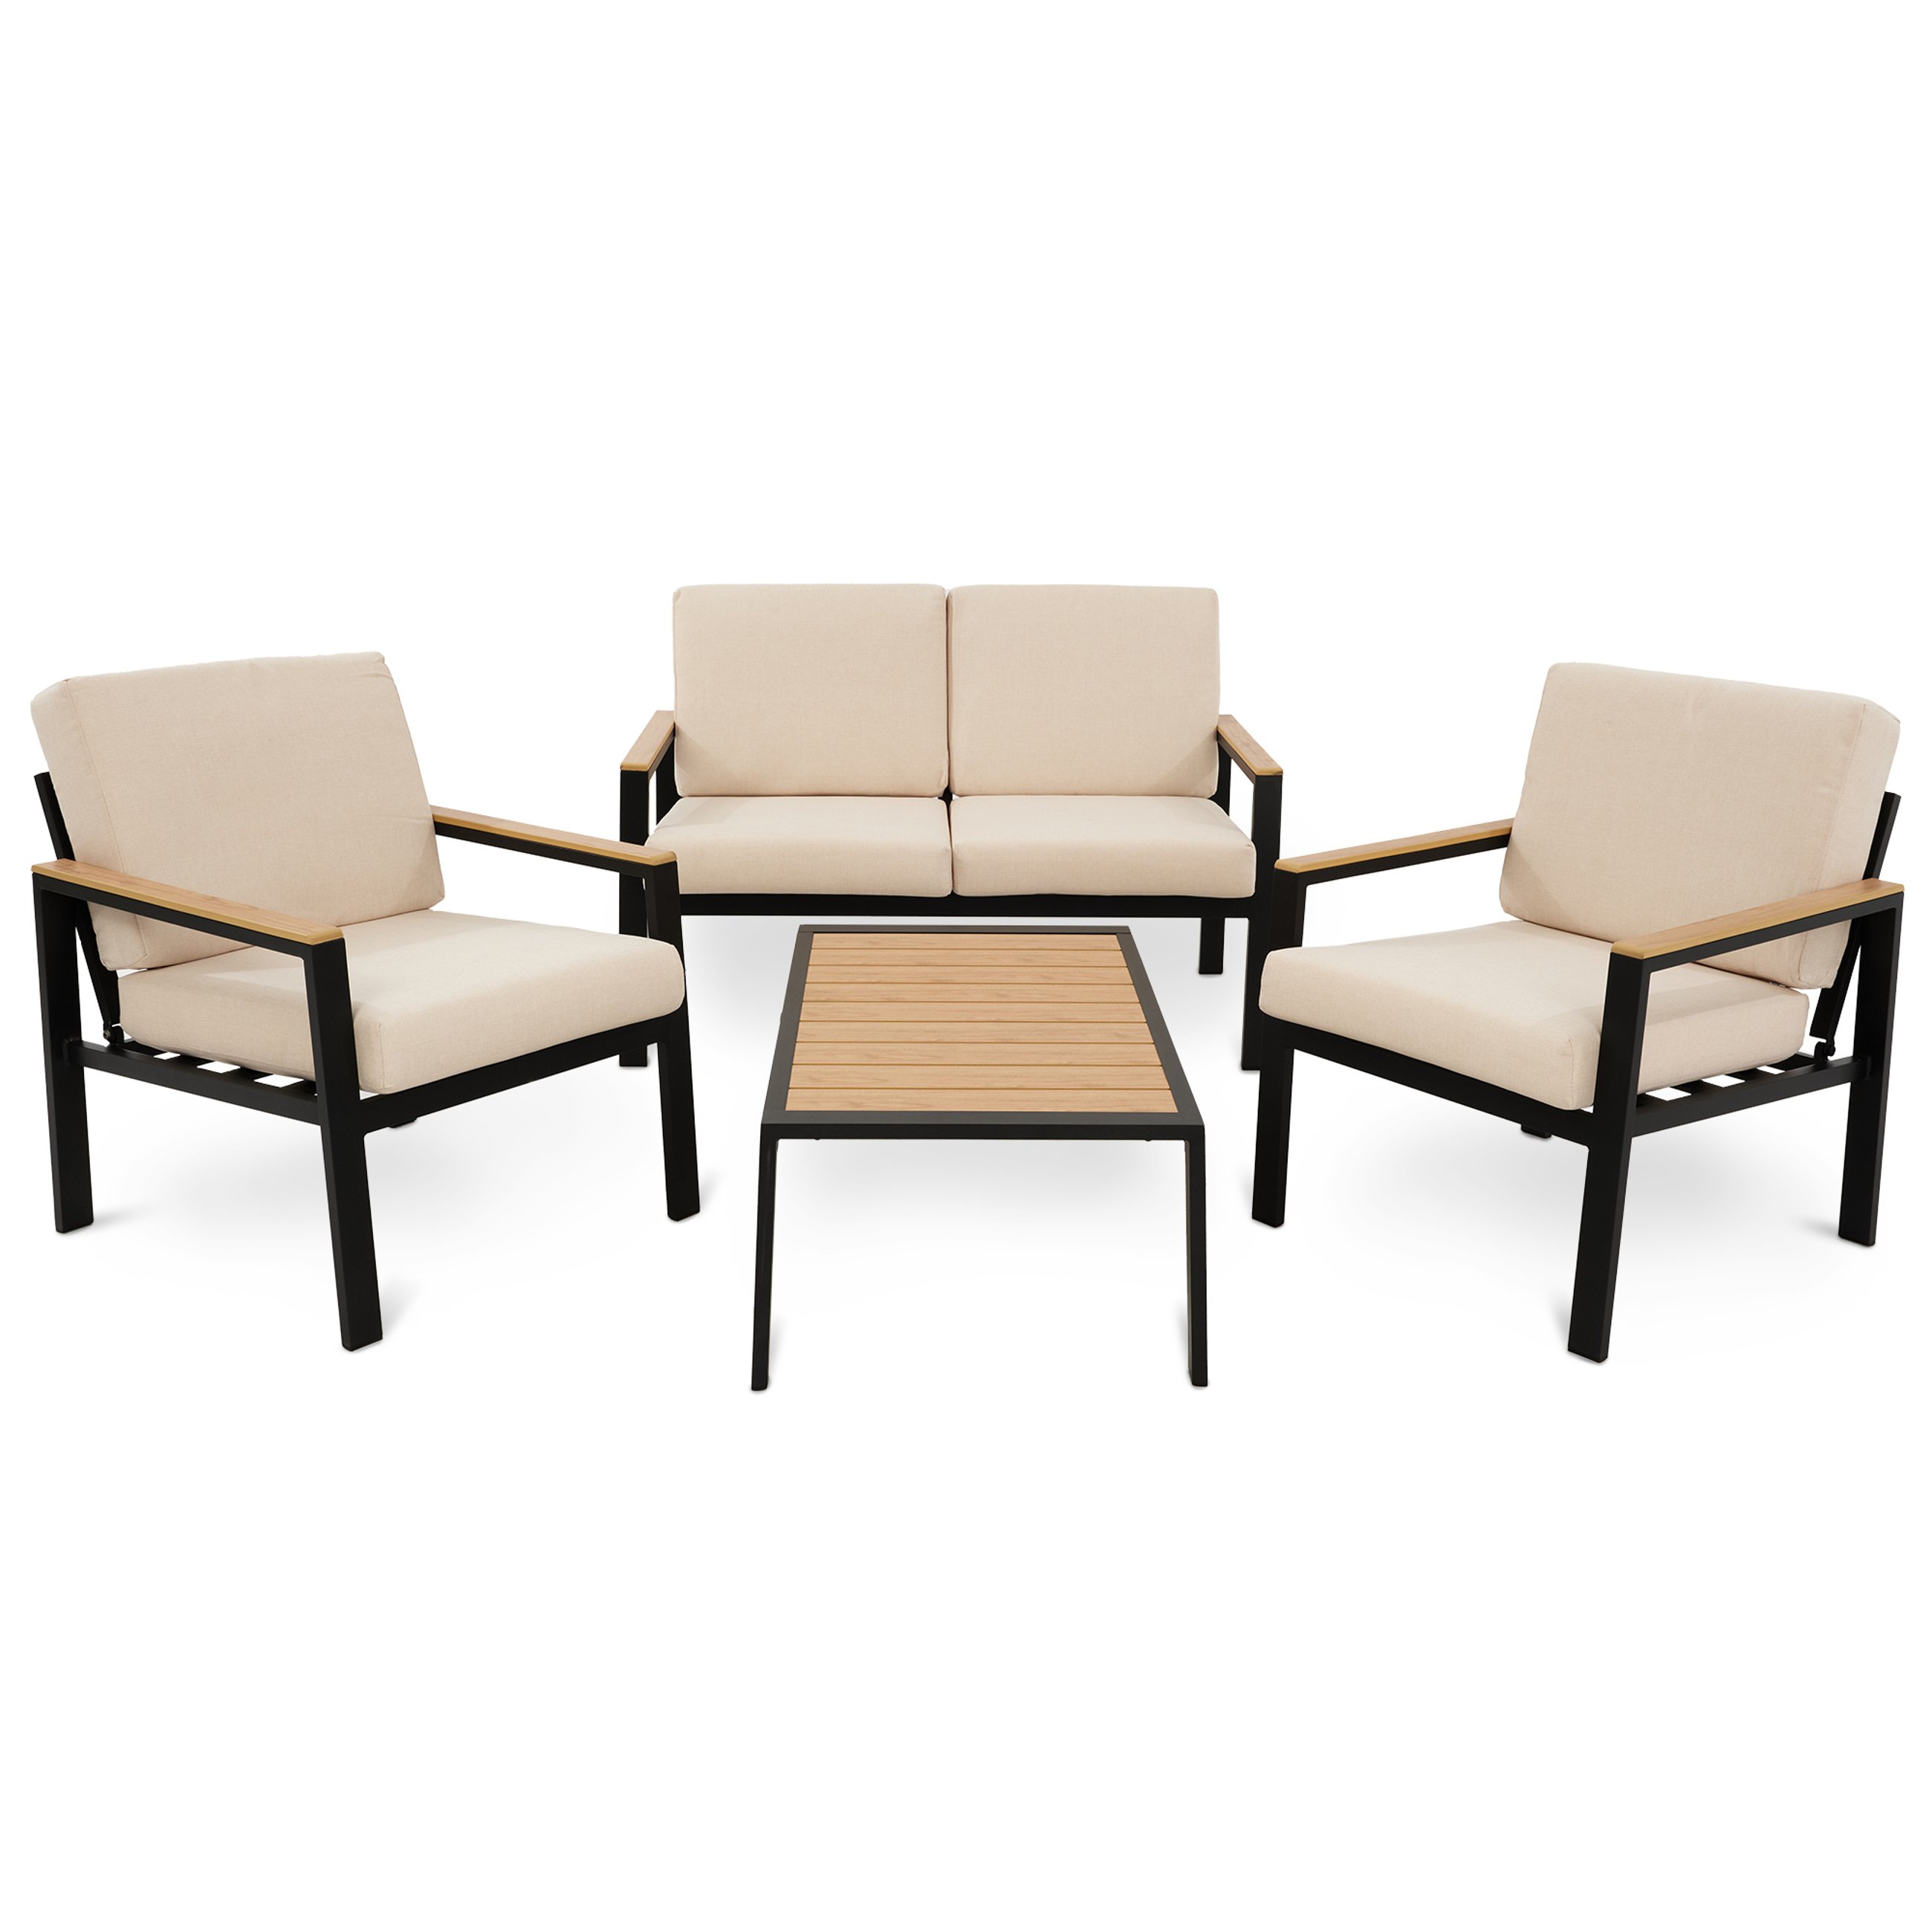 Fotele i sofa w zestawie Merano wyposażone są w eleganckie, beżowe poduchy dopasowane do rozmiaru siedzisk i oparć